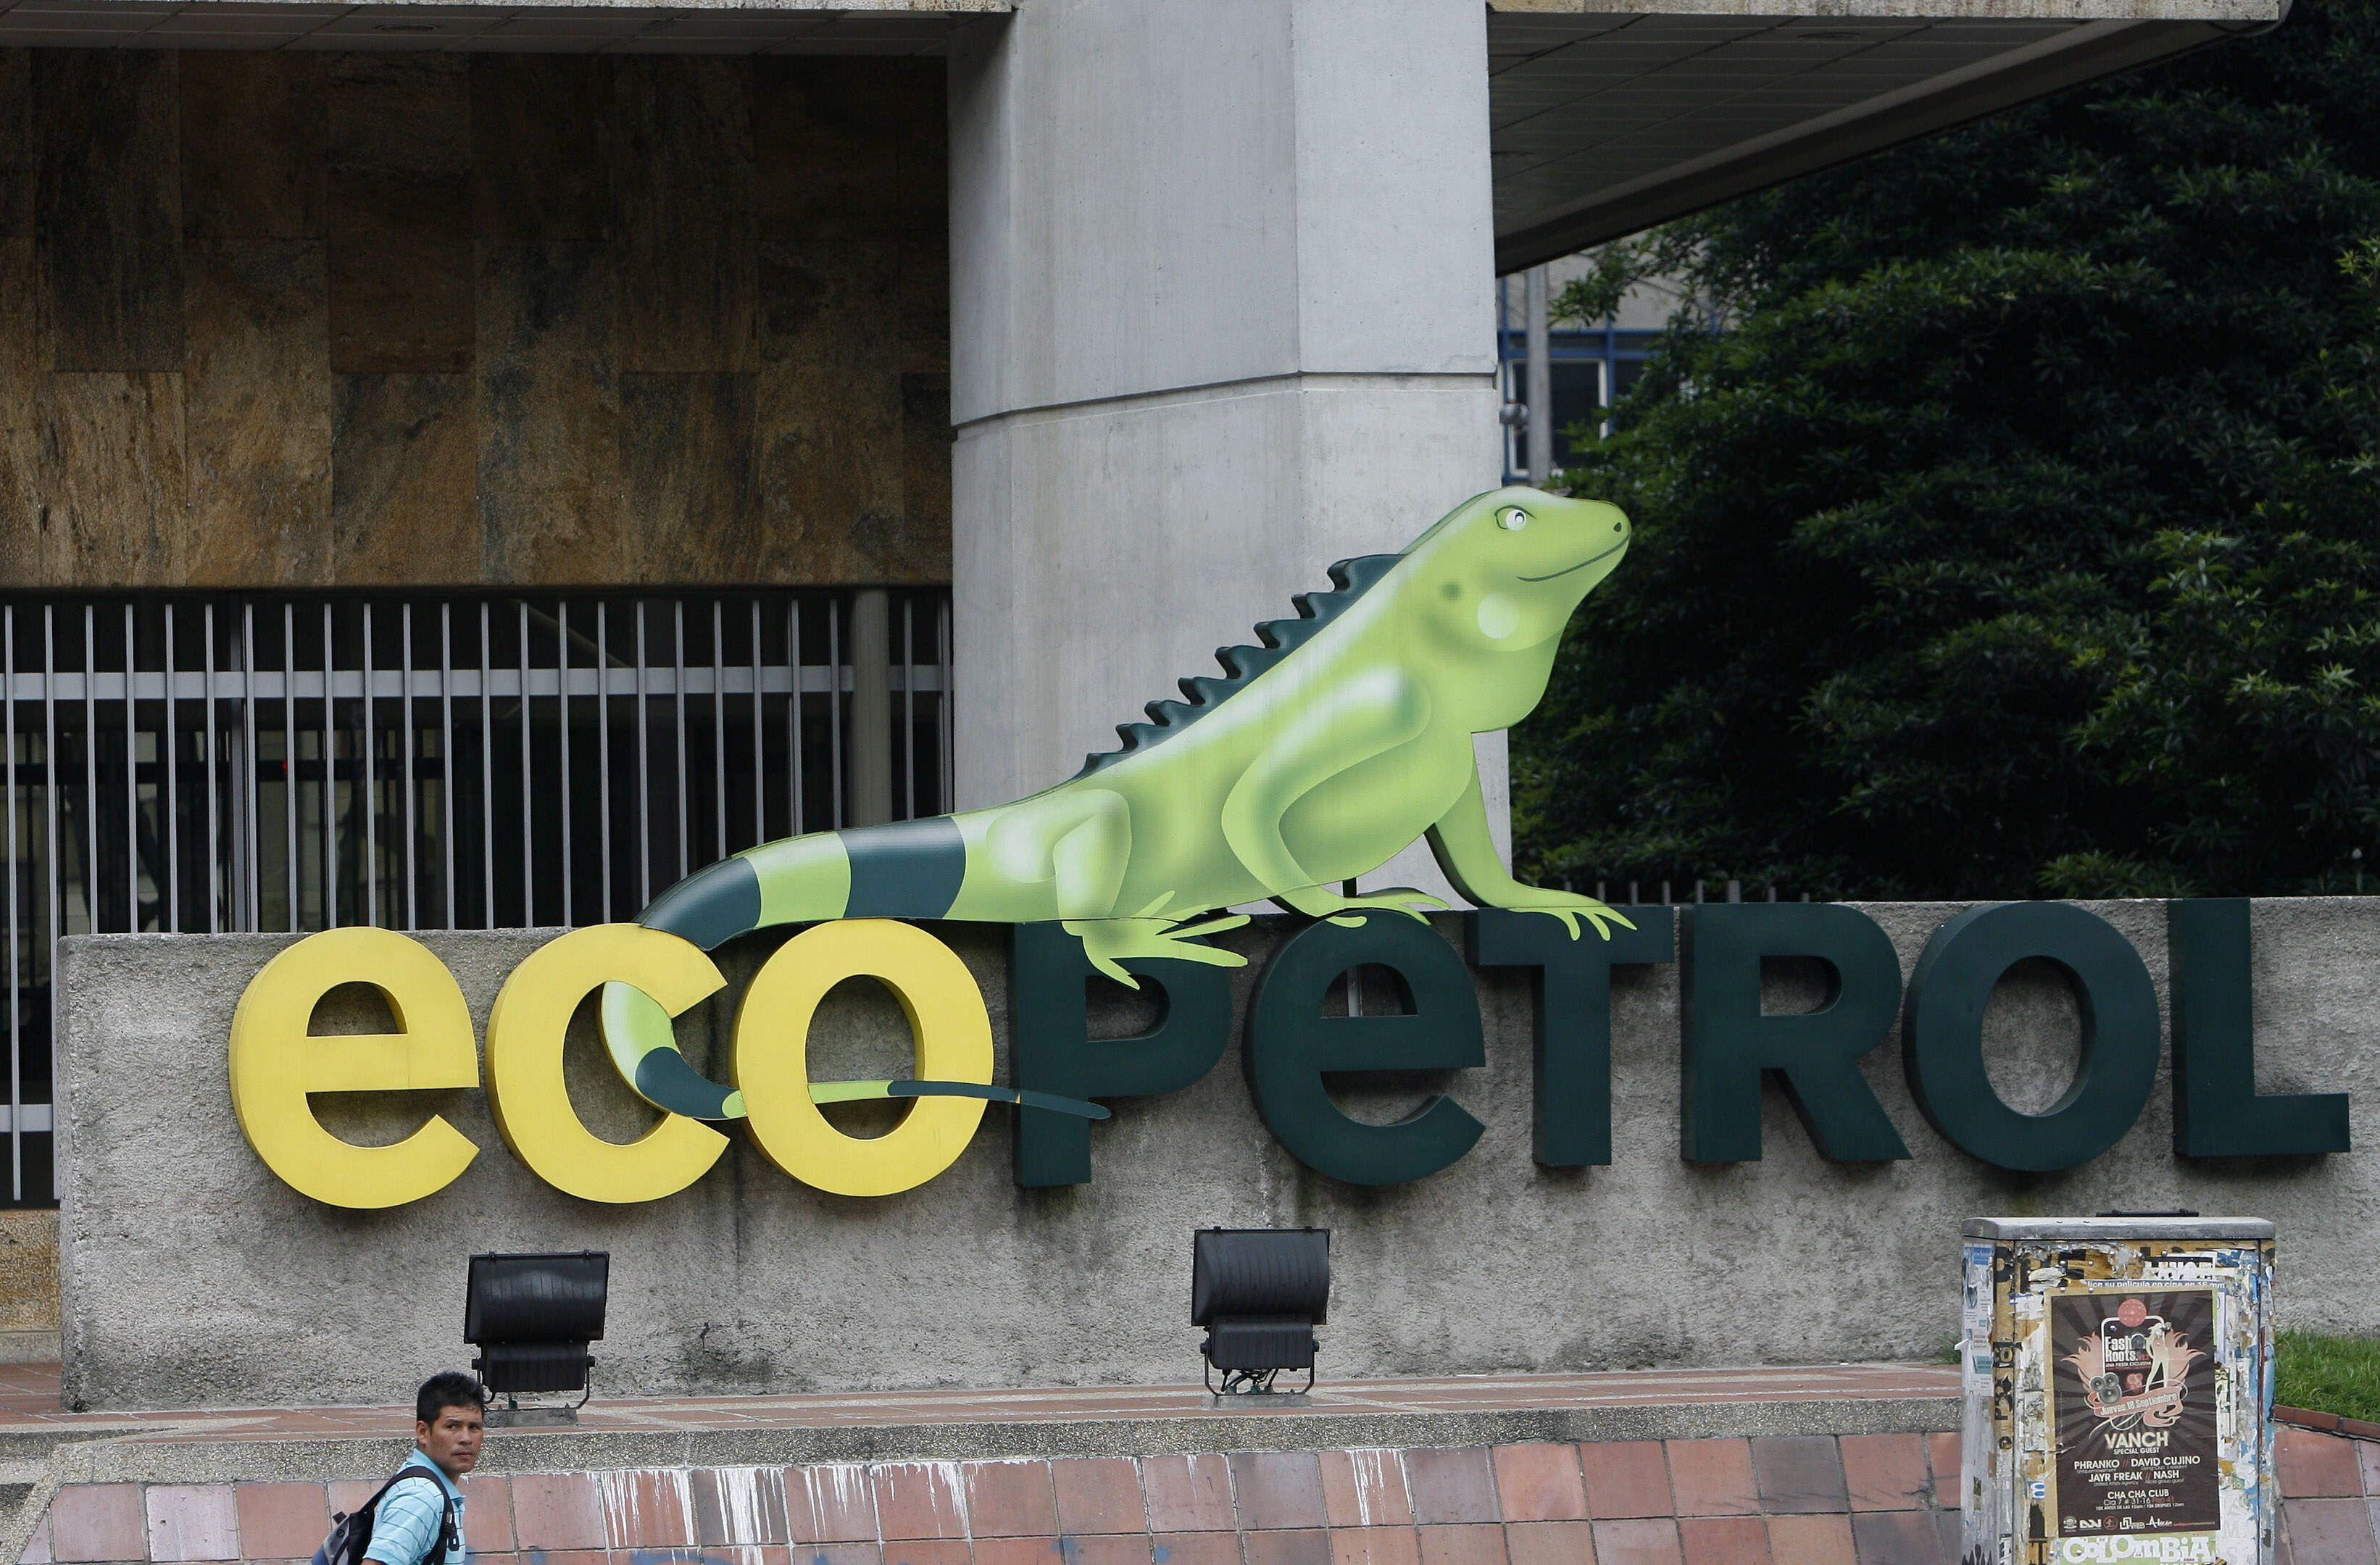 El presidente Gustavo Petro busca que Ecopetrol camine hacia una transición energética em donde se exploten energías limpias - crédito Guillermo Legaria/EFE